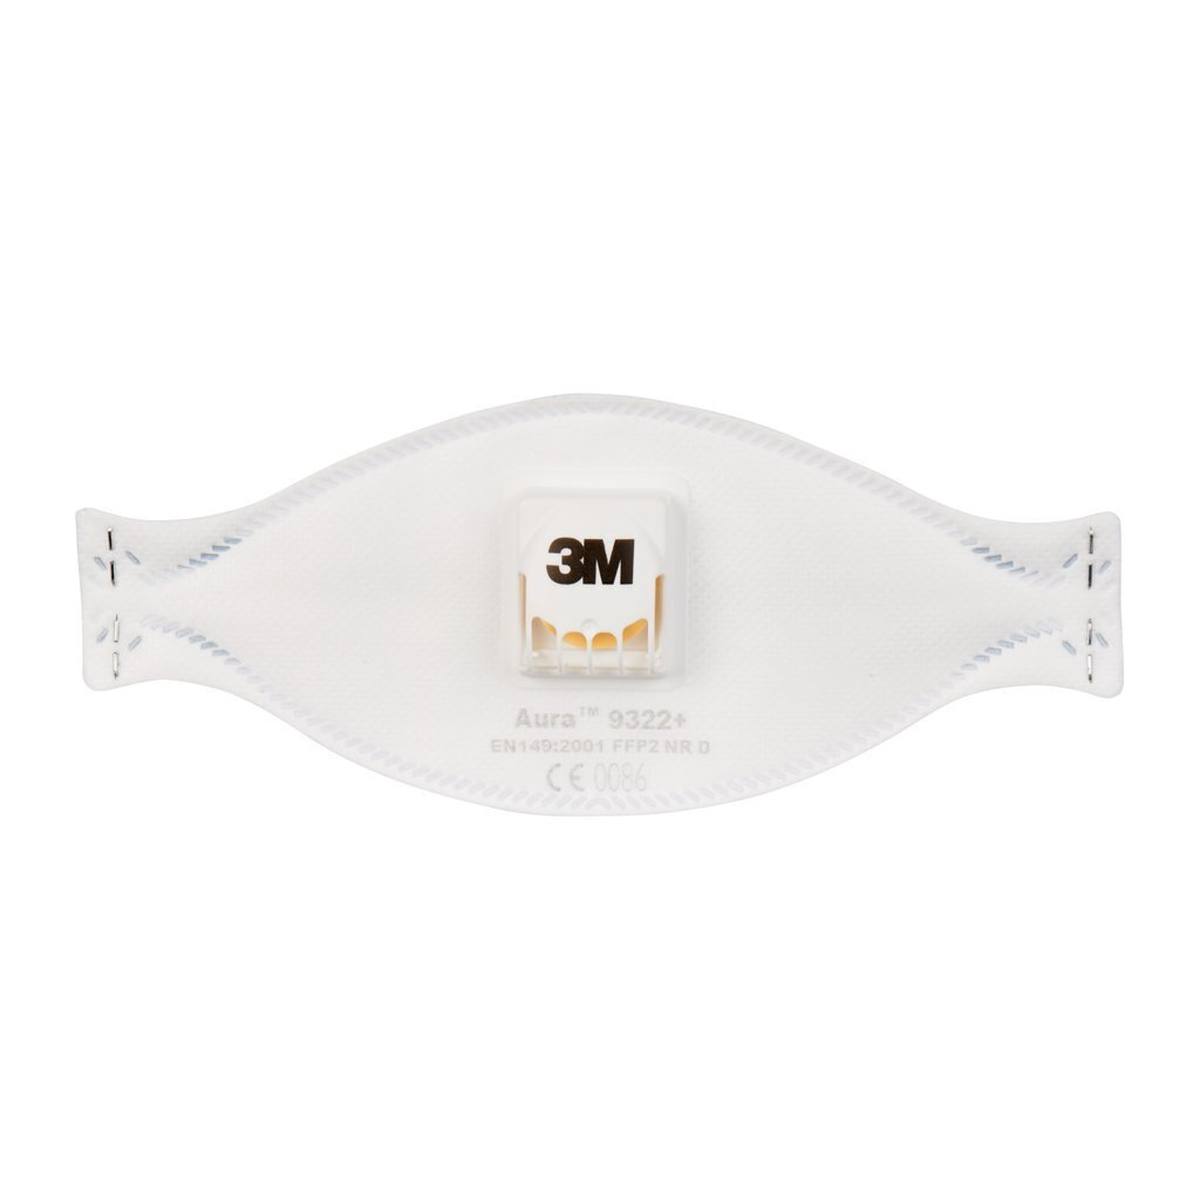 3M 9322+ Aura Masque de protection respiratoire FFP2 avec valve d'expiration Cool-Flow, jusqu'à 10 fois la valeur limite (emballage individuel hygiénique)